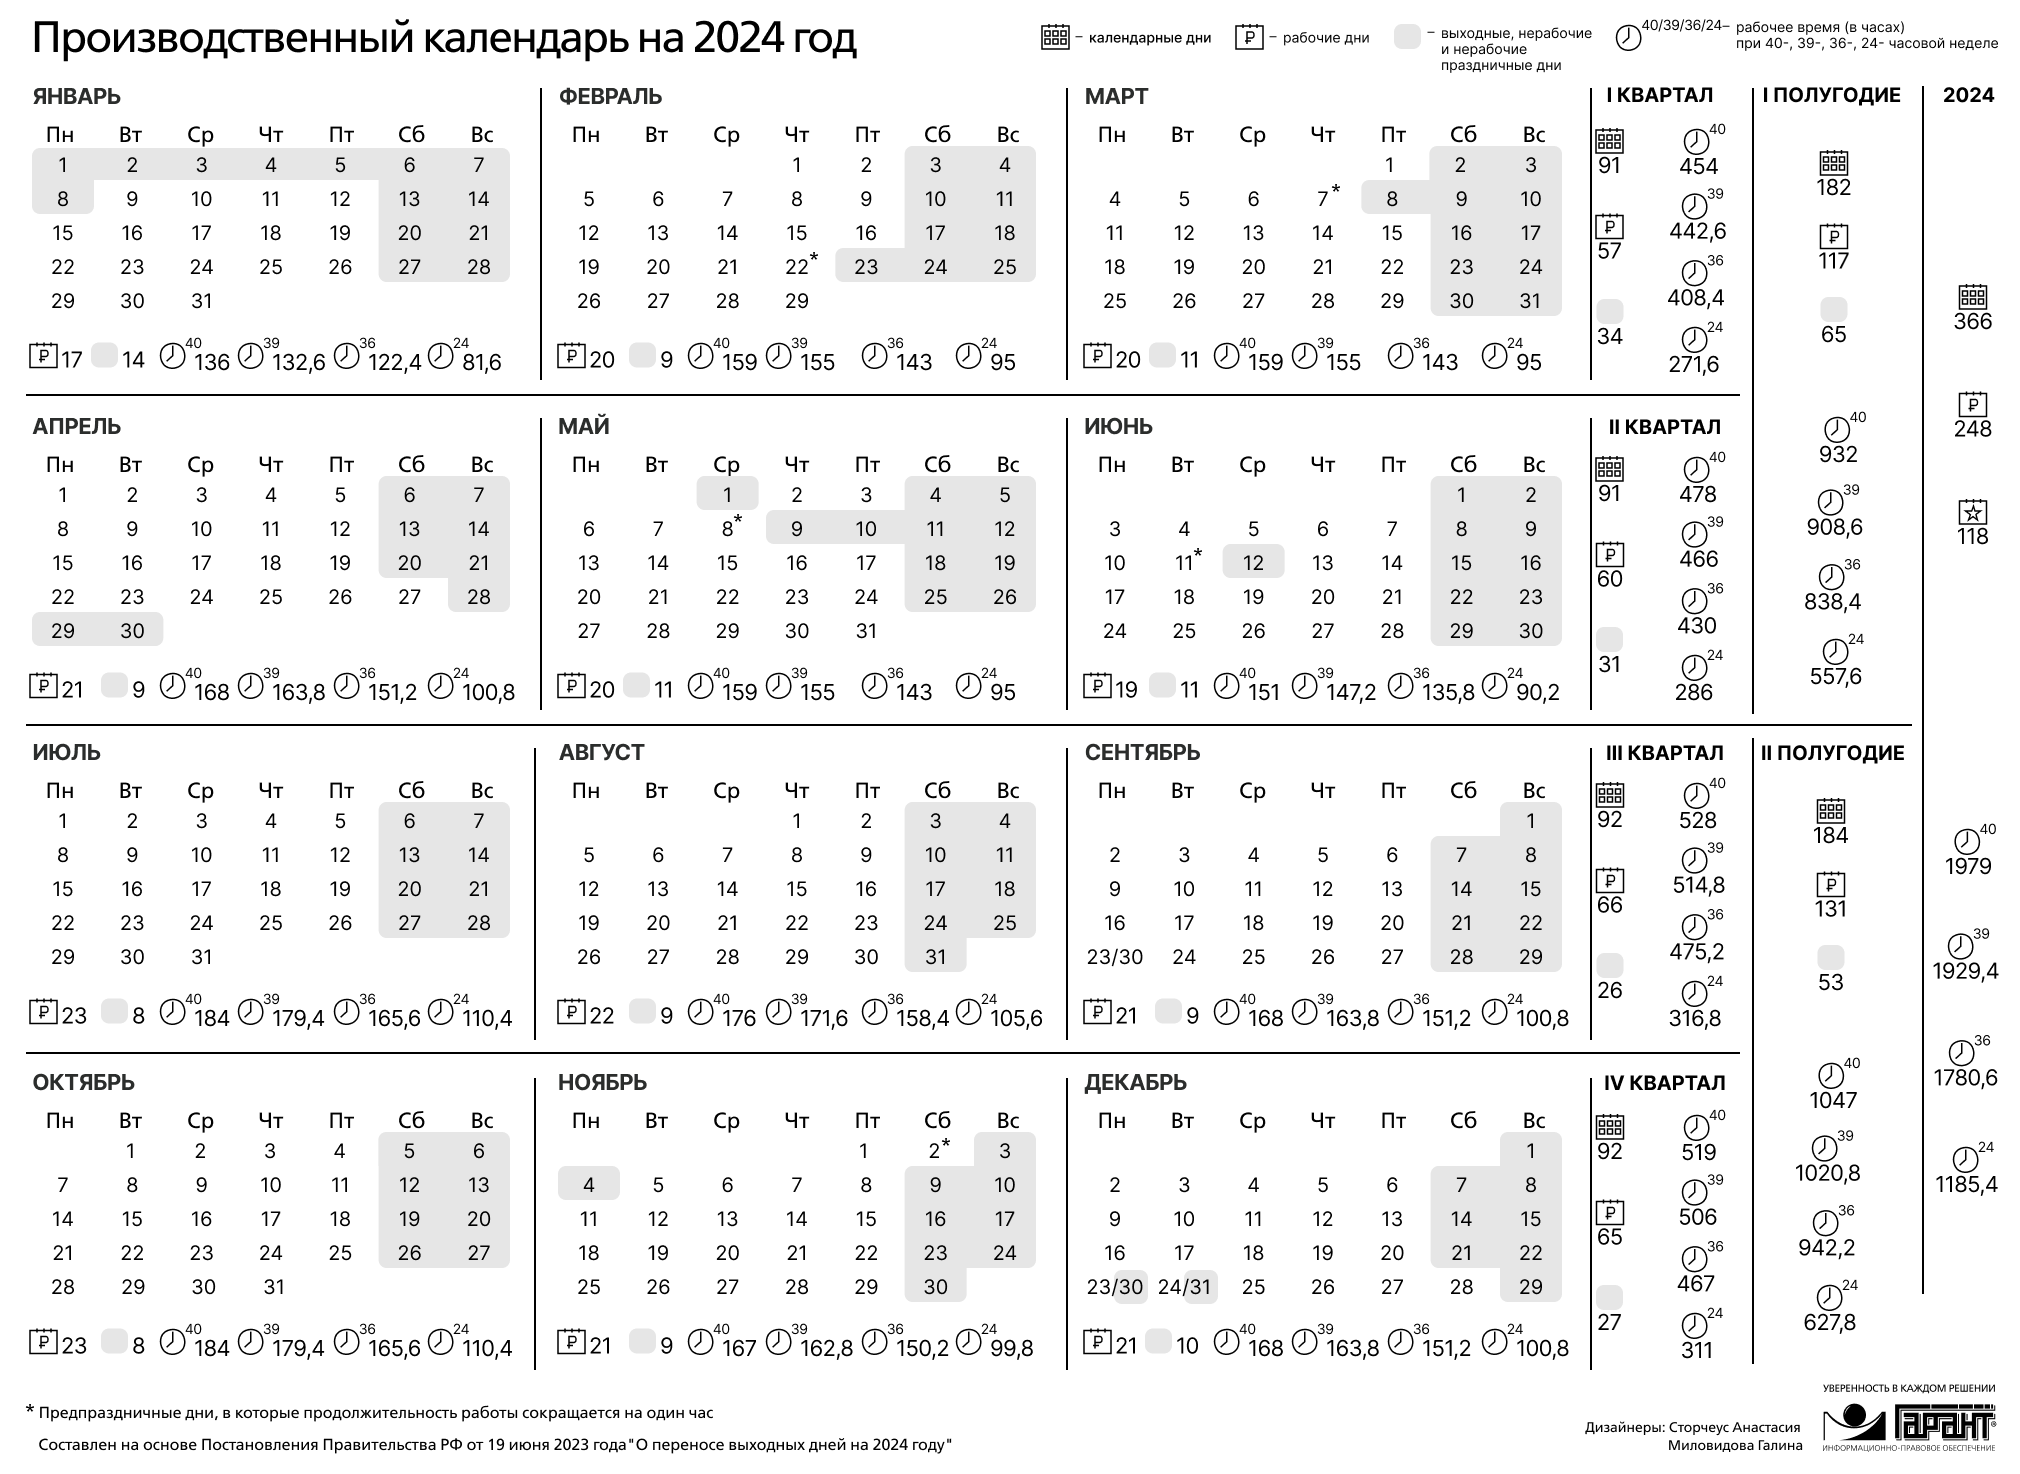 Календарь смен на 2024 год. Праздничные дни 2024 года в России производственный календарь. Календарь на 2024 год с праздниками и выходными производственный РФ. Производственный календарь на 2024 го од. Зводственный календарь на 2024.